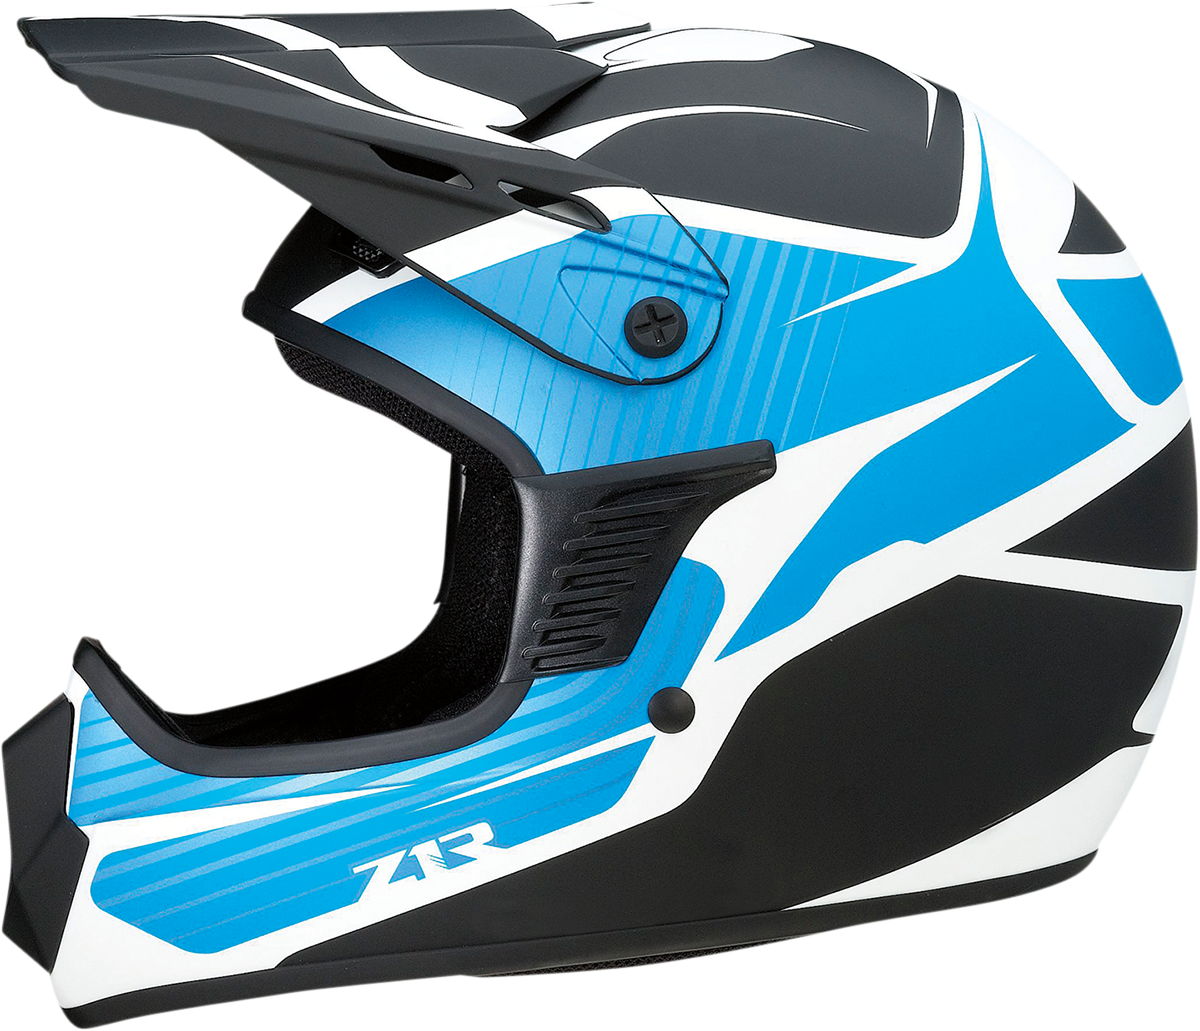 Z1R Child Rise Helmet - Flame - Blue - L/XL 0111-1436